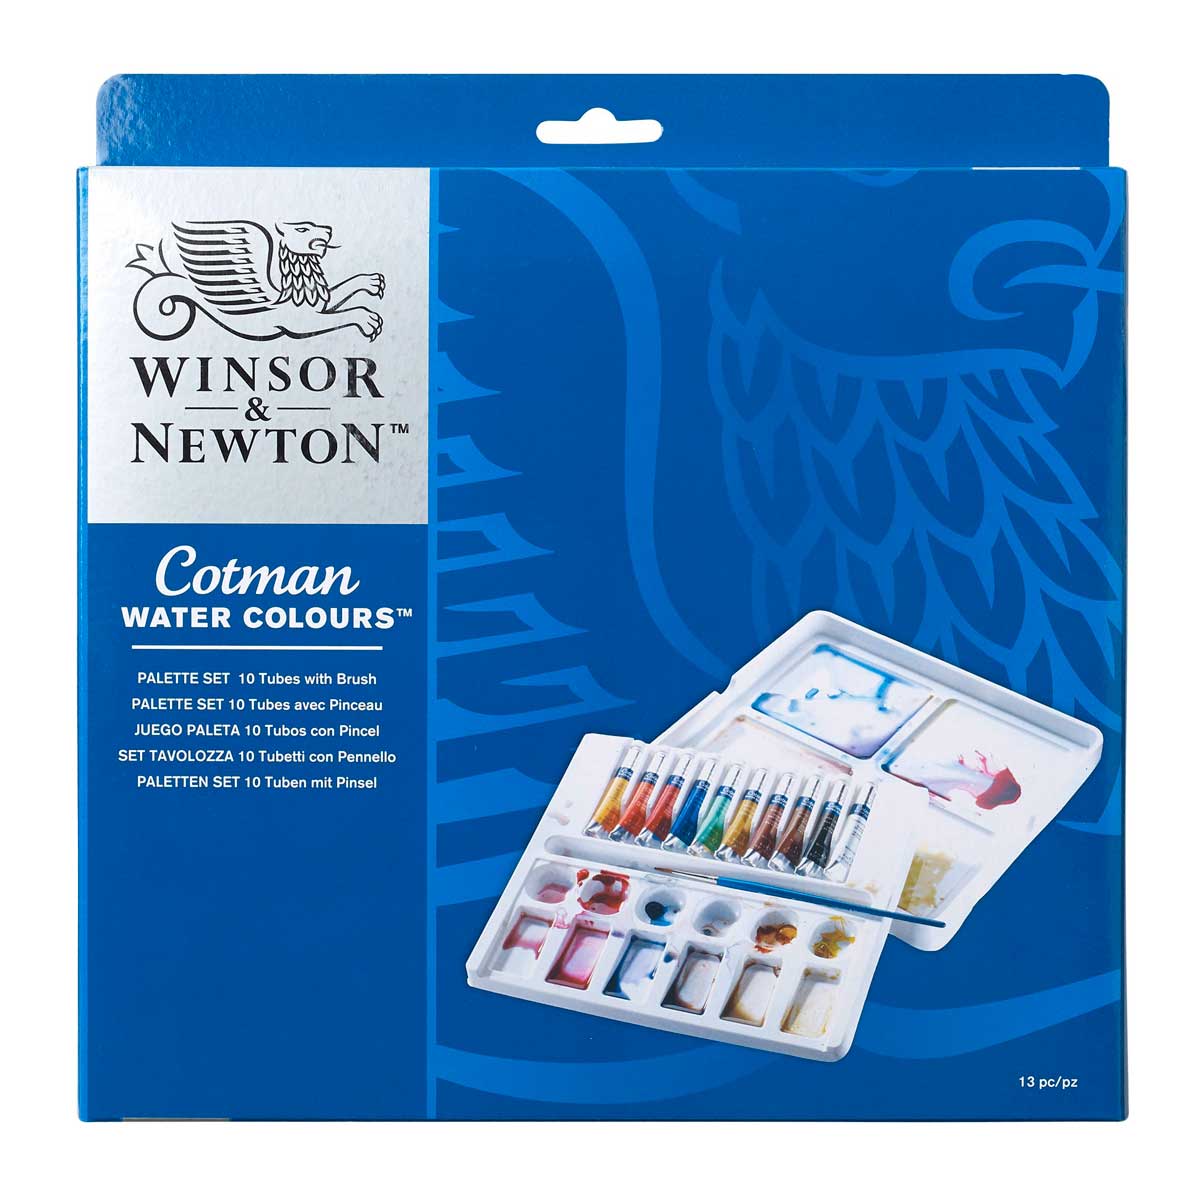 Winsor & Newton Cotman Water Colours Palette Set 10 x 8 ml tubes